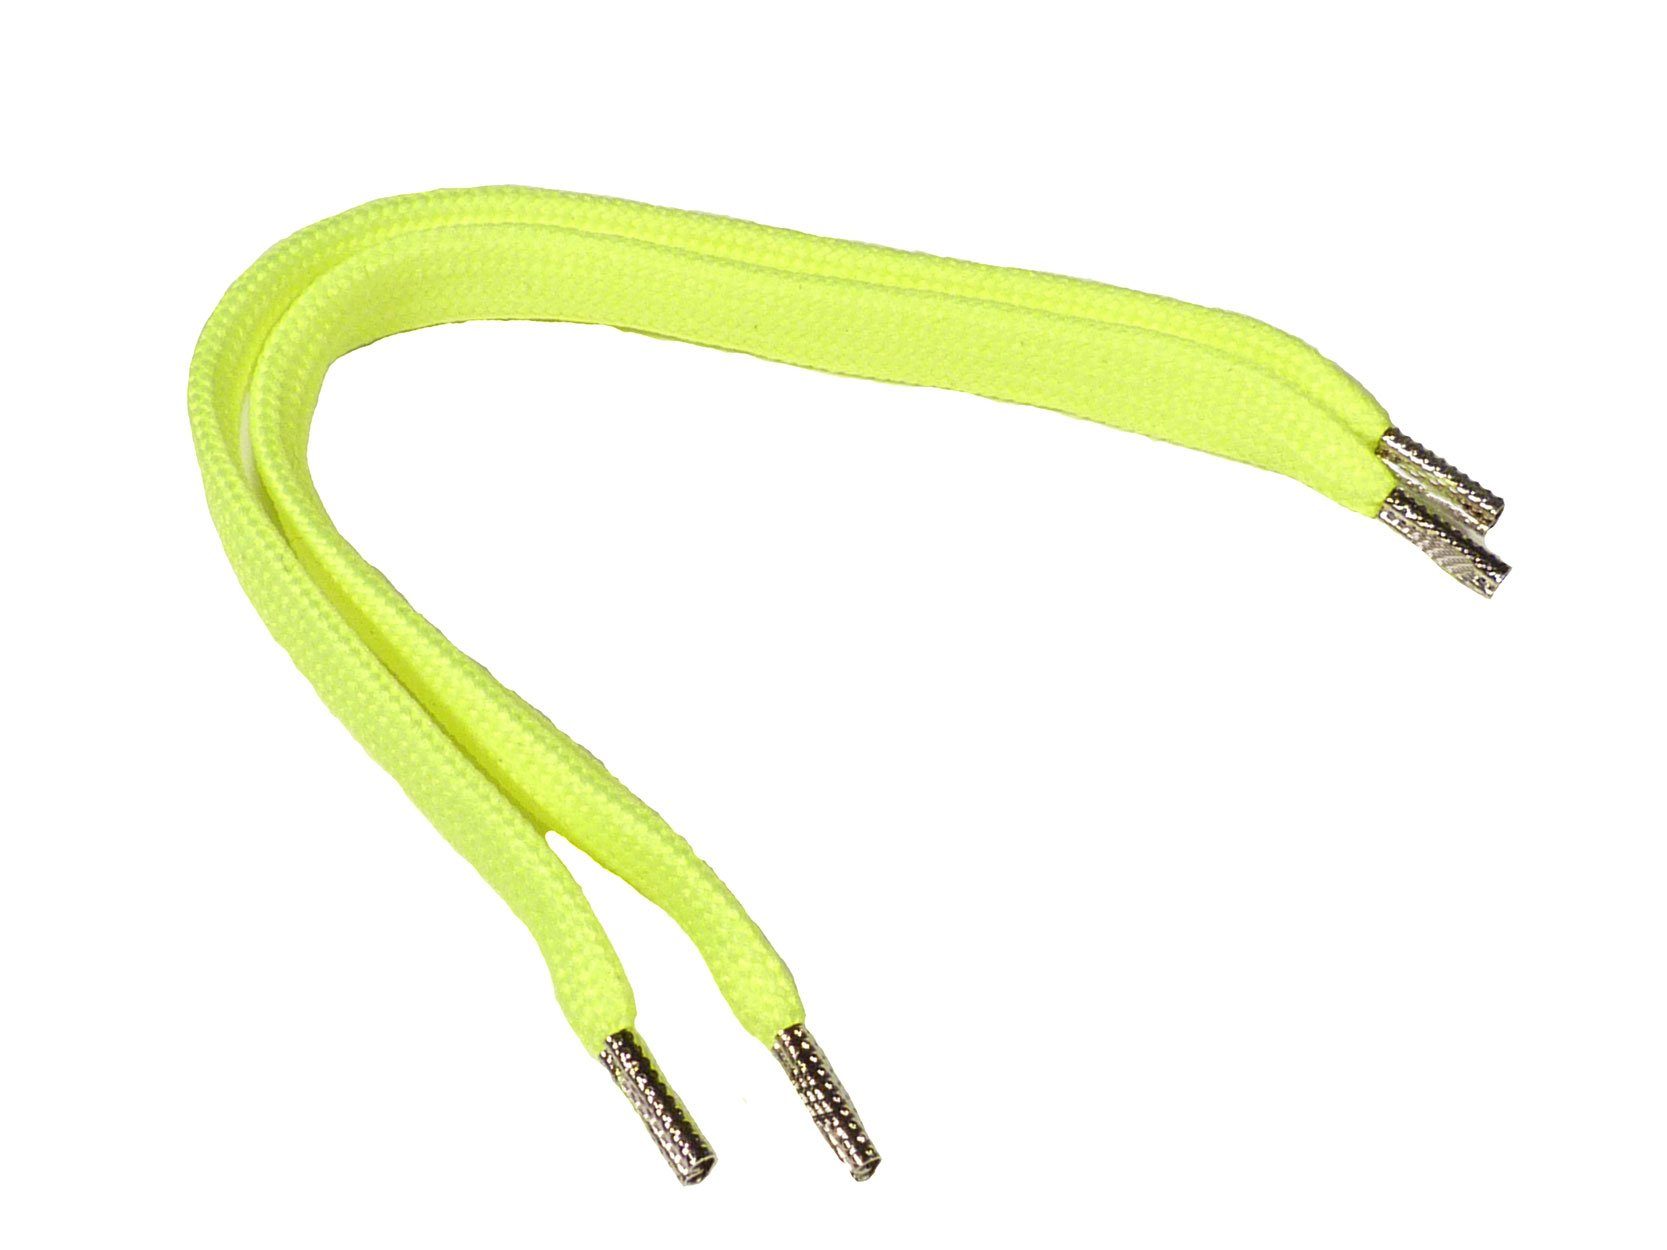 Rema Schnürsenkel Rema Schnürsenkel Neon Gelb - flach - ca. 8-10 mm breit für Sie nach Wunschlänge geschnitten und mit Metallenden versehen